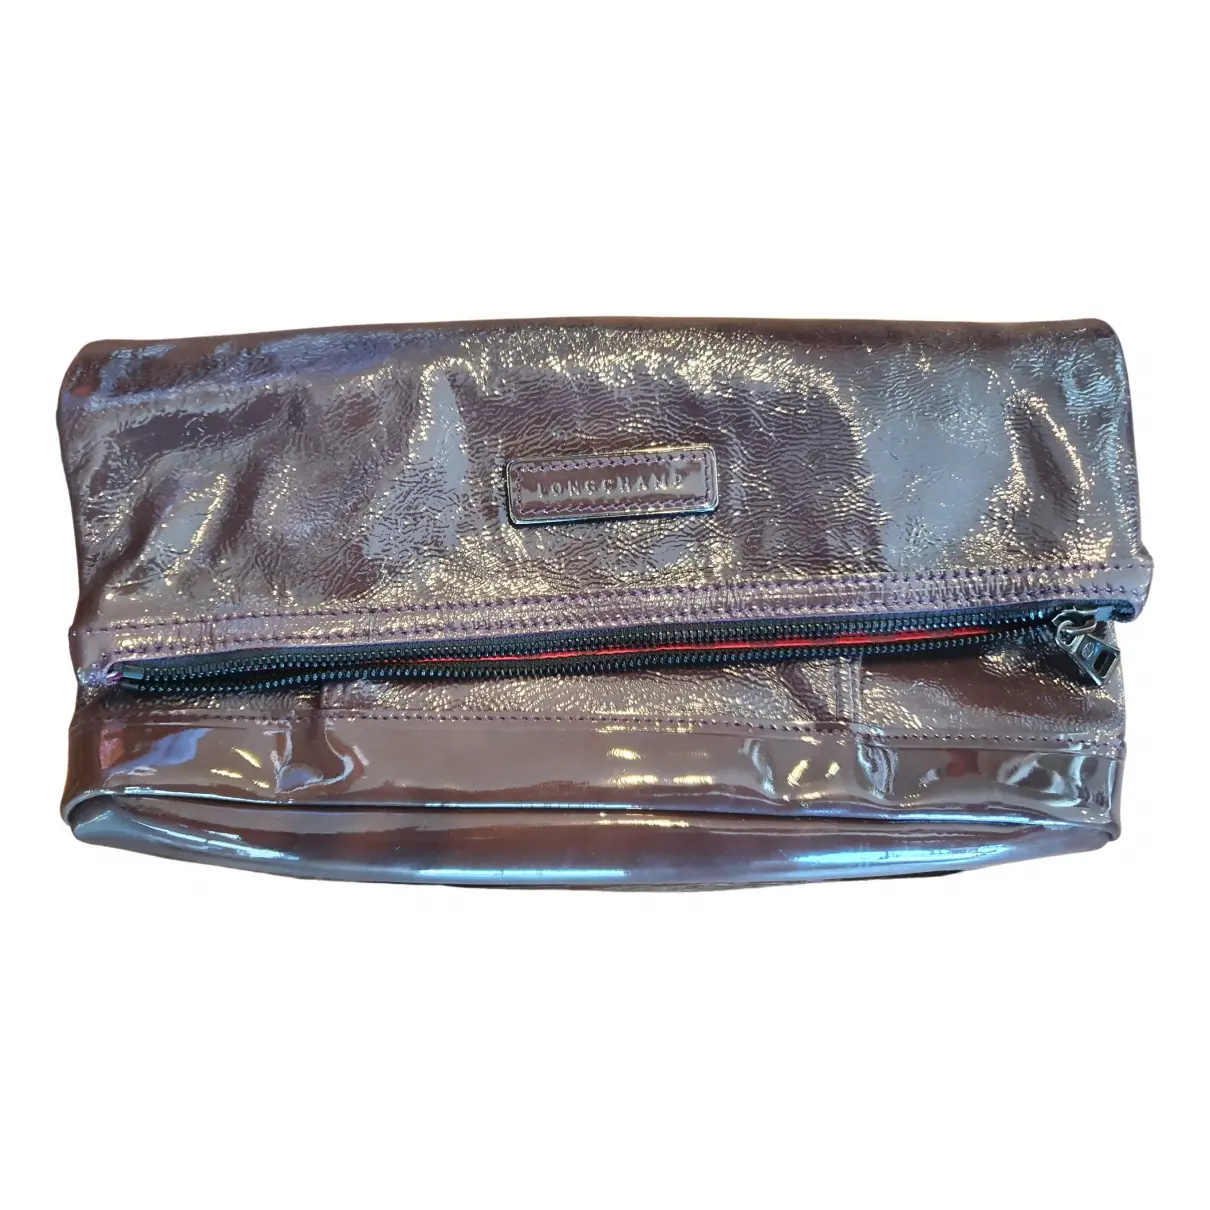 3D patent leather clutch bag Longchamp